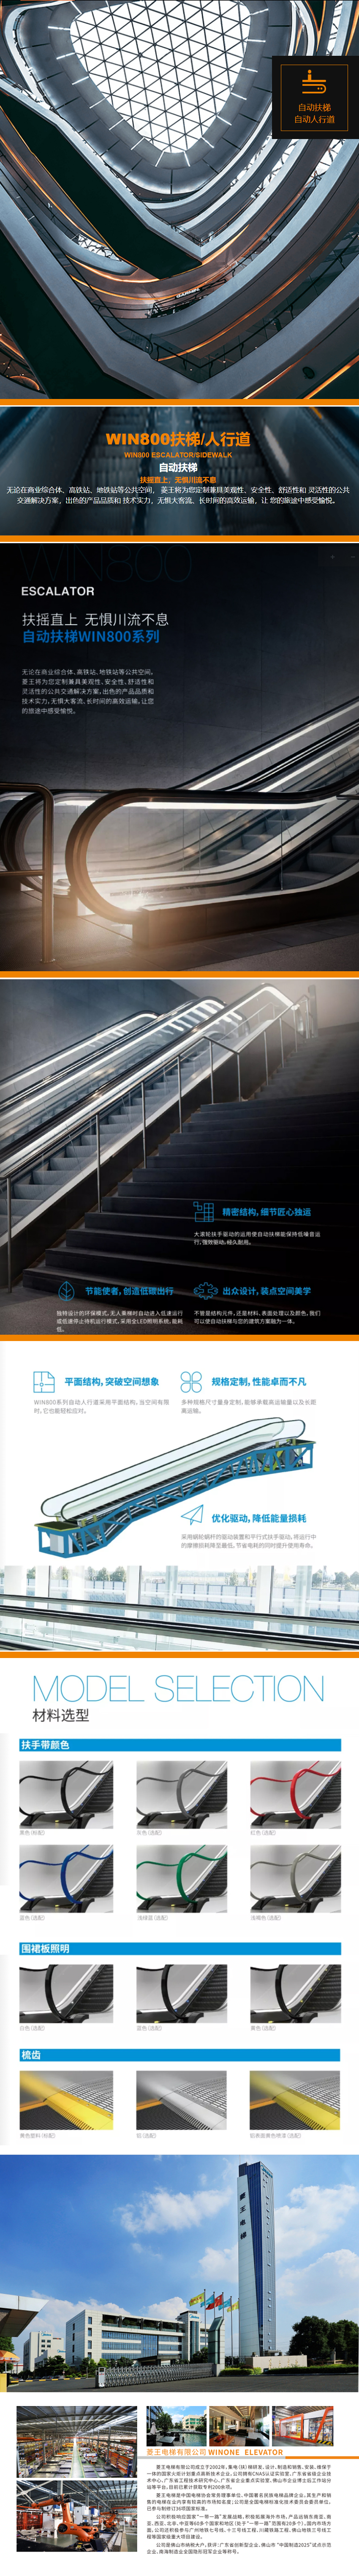 自动扶梯自动人行道WIN800.jpg